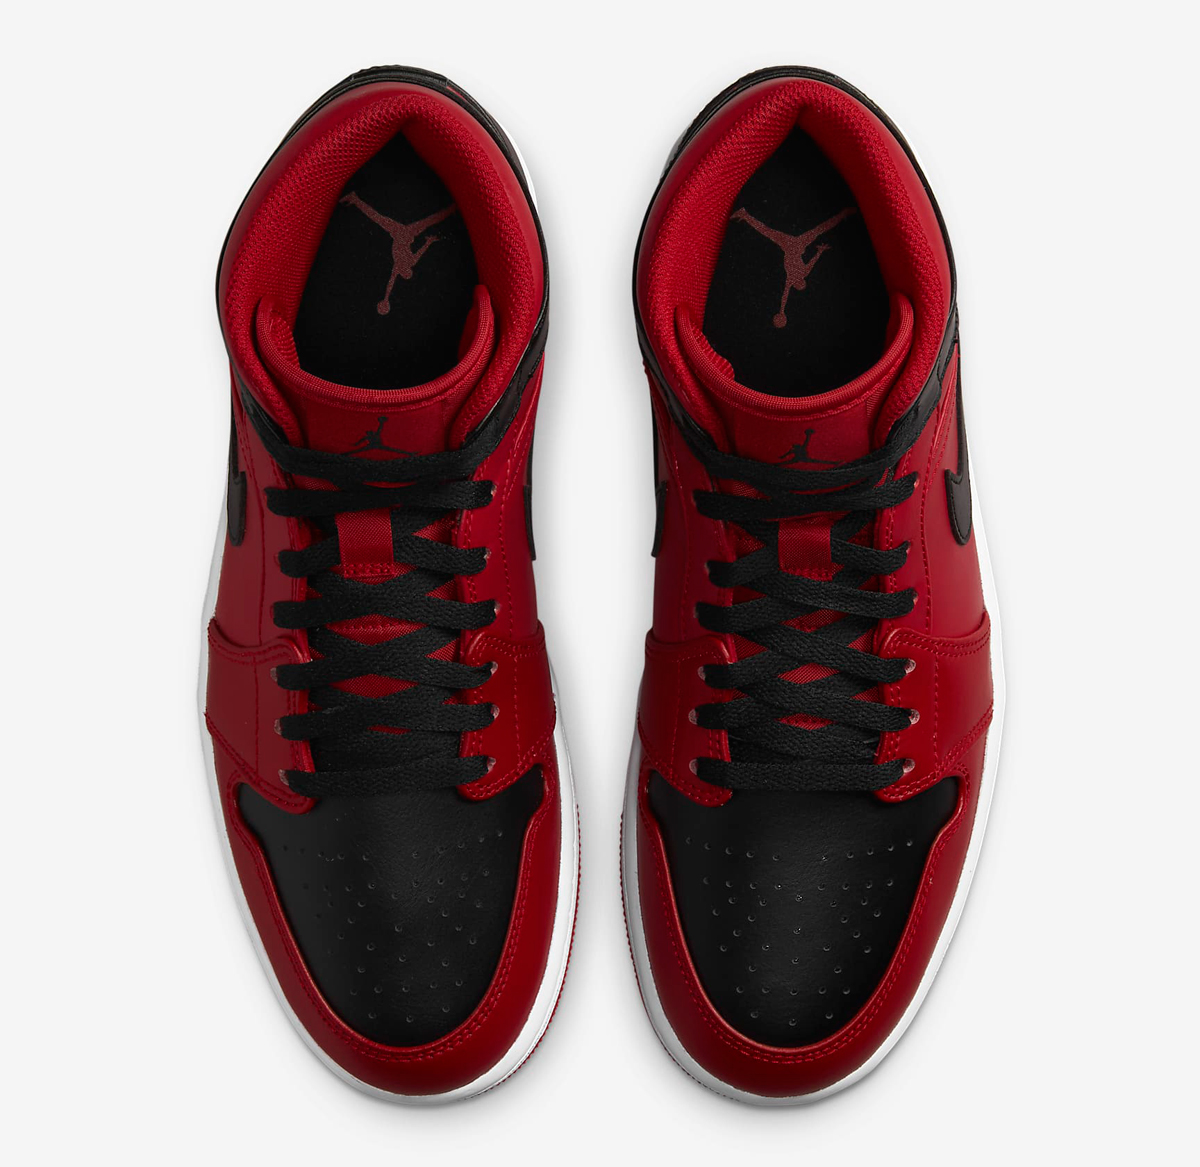 Air-Jordan-1-Mid-Gym-Red-Black-Release-Date-4